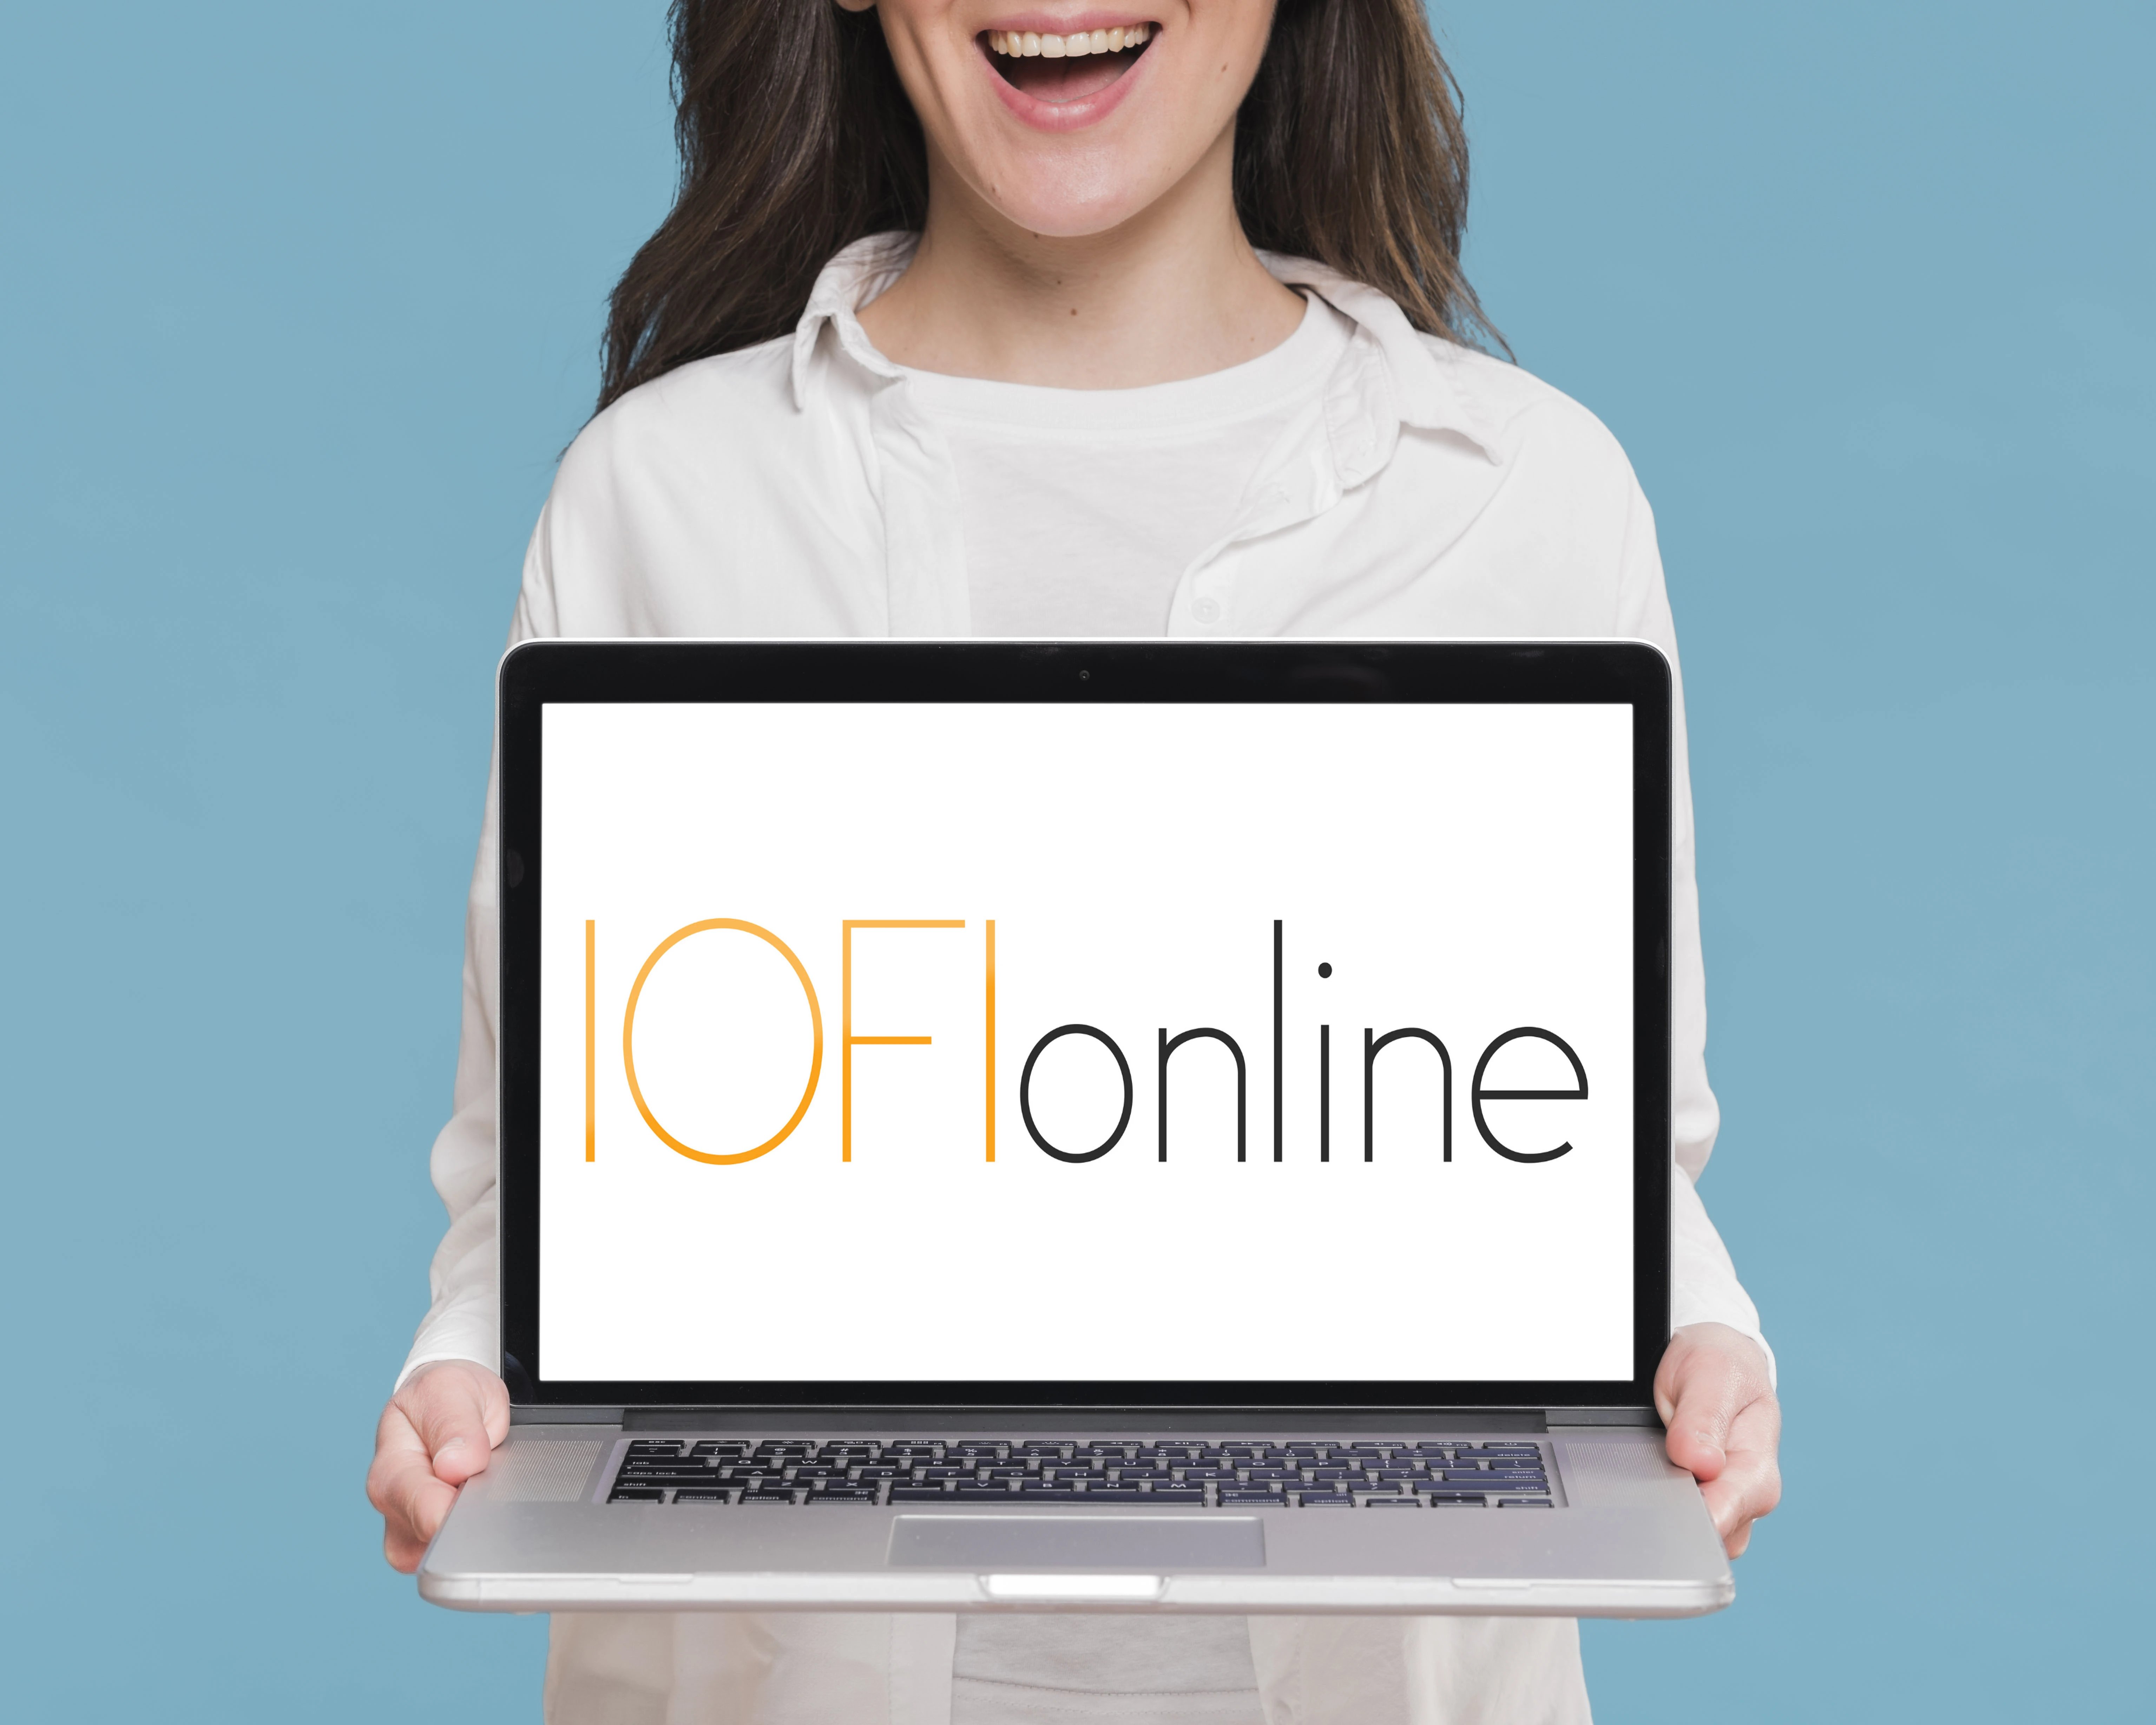 Mujer sosteniendo laptop con logo de iofionline